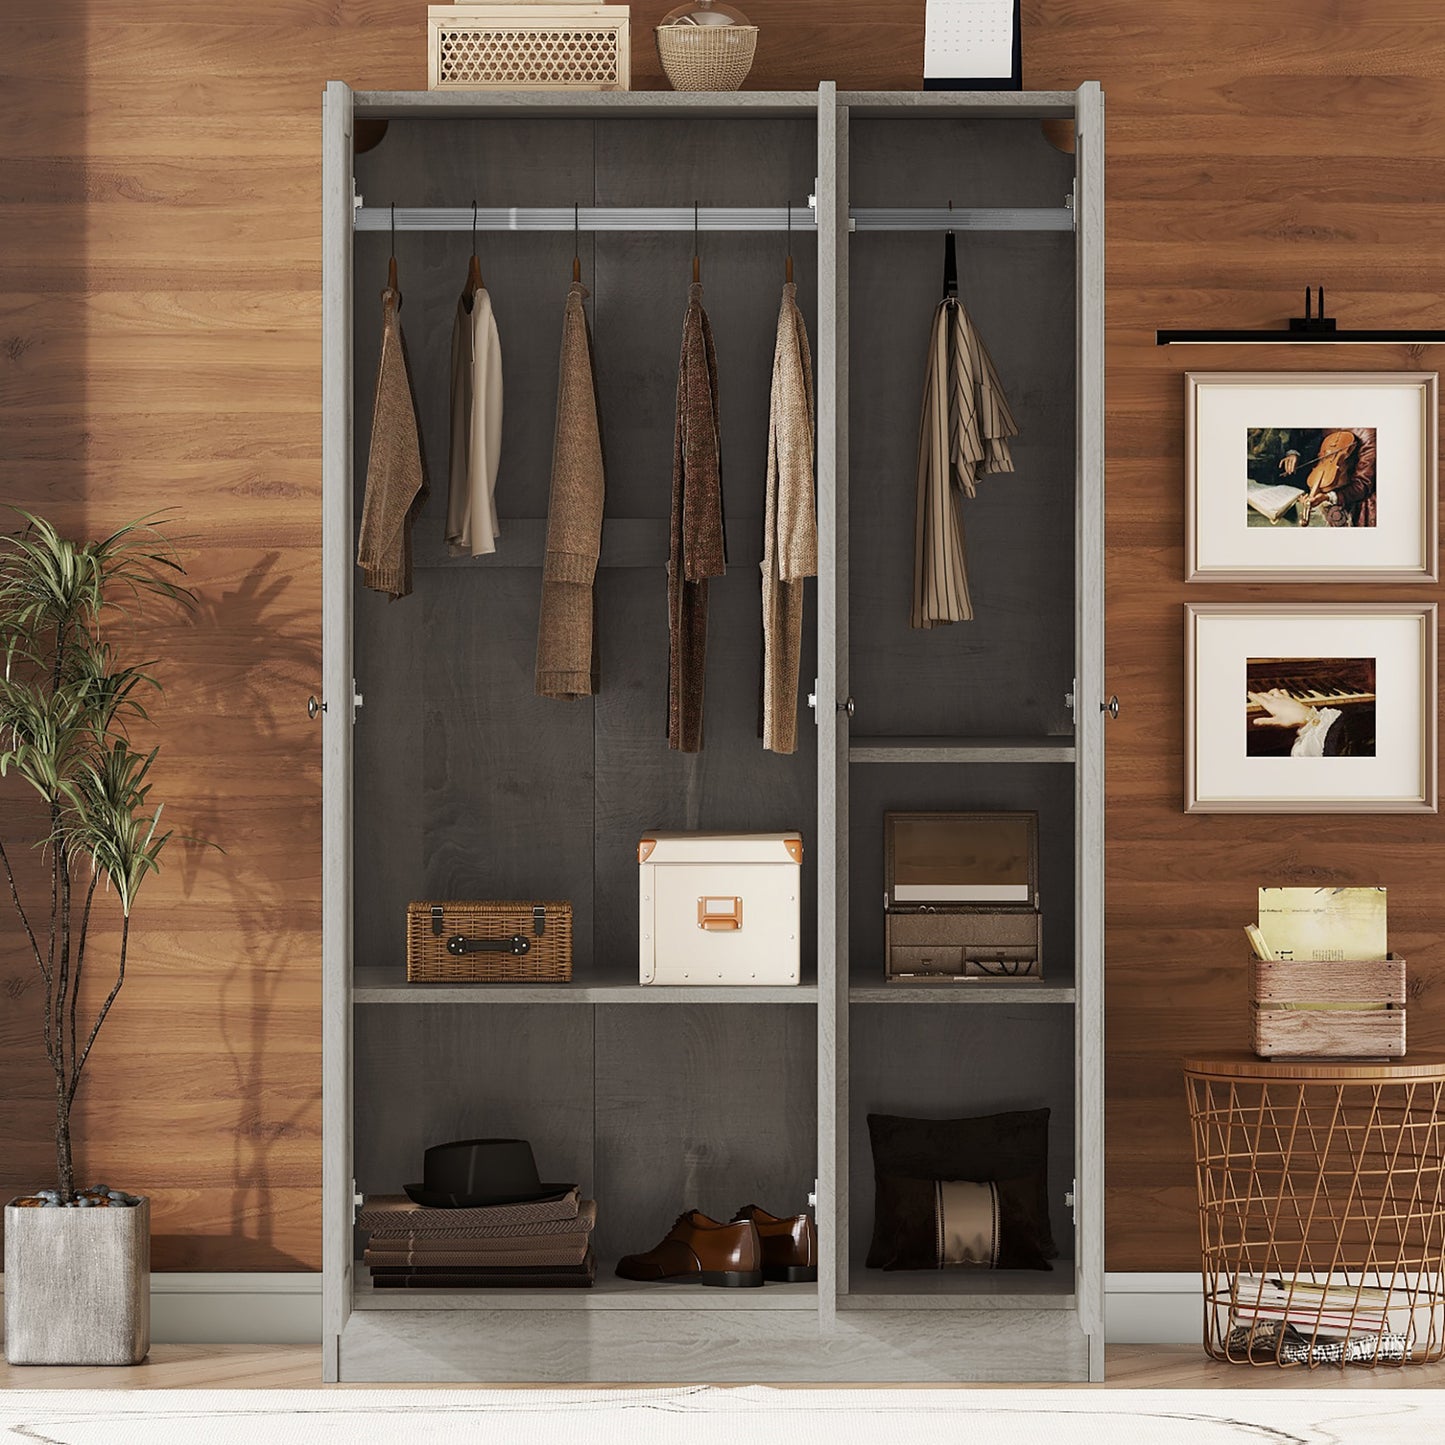 3-Door Shutter Wardrobe with shelves in Gray